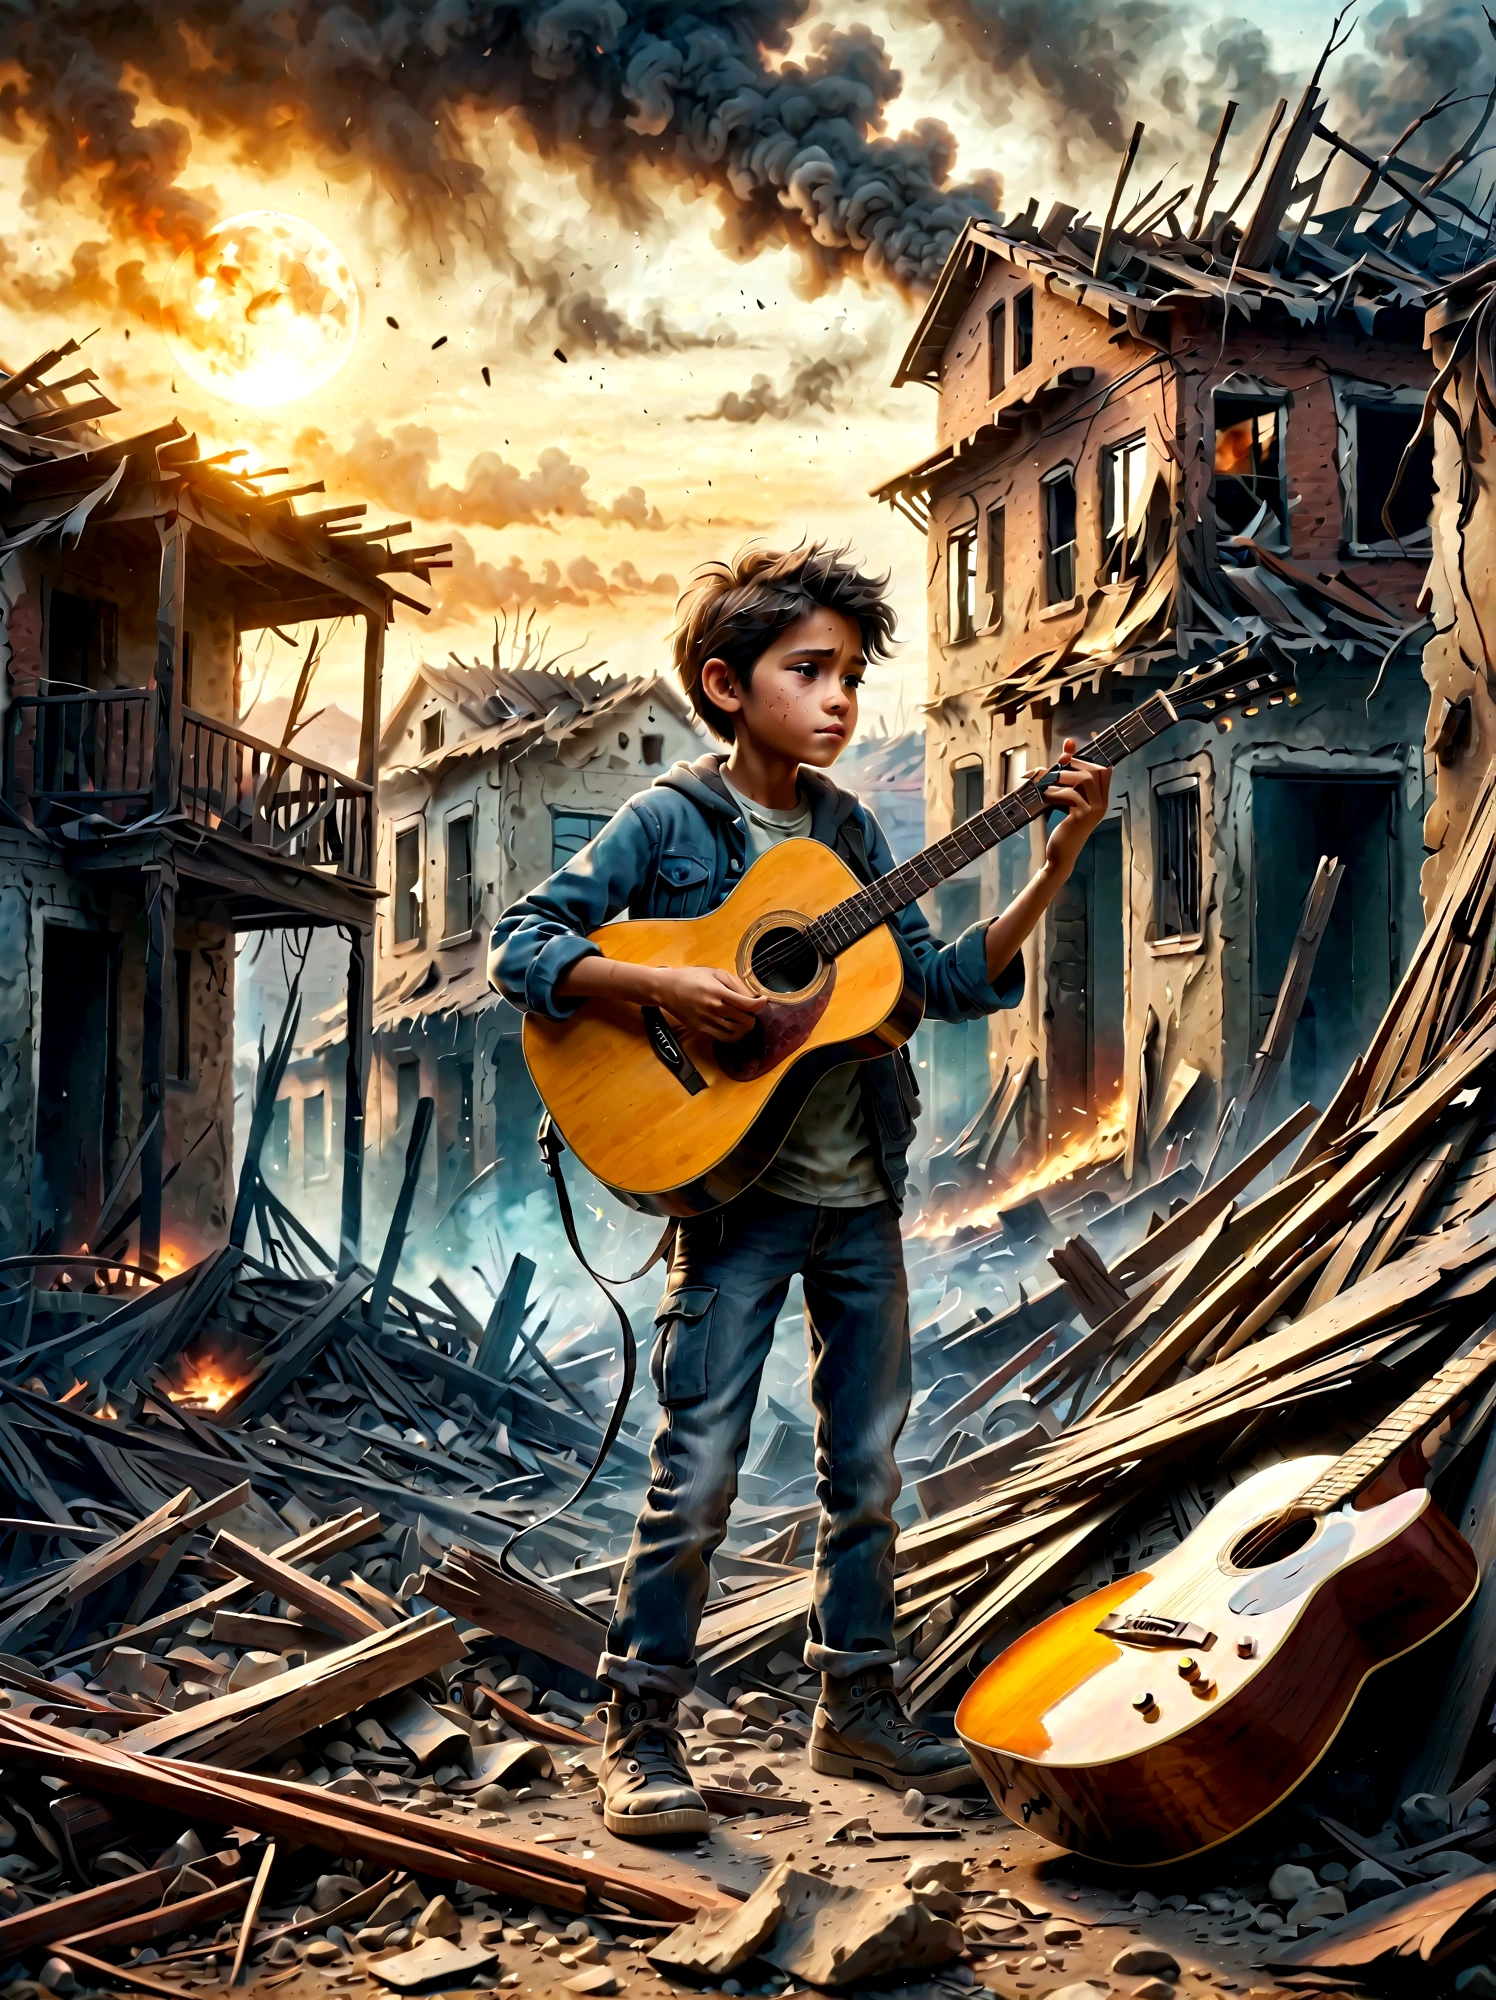 在战乱之中, 烟雾弥漫的废墟, 一个孩子正在弹吉他. 这一场景捕捉到了周围环境的破坏与人们的纯真之间的鲜明对比。 . 废墟里满是瓦砾和建筑残骸, 背景是烟雾和火焰. 孩子的表情很阴沉, 反映了严峻的现实. 整体氛围凄美而感人, 用柔和的色彩和戏剧性的灯光来强调音乐所代表的荒凉和希望的曙光.